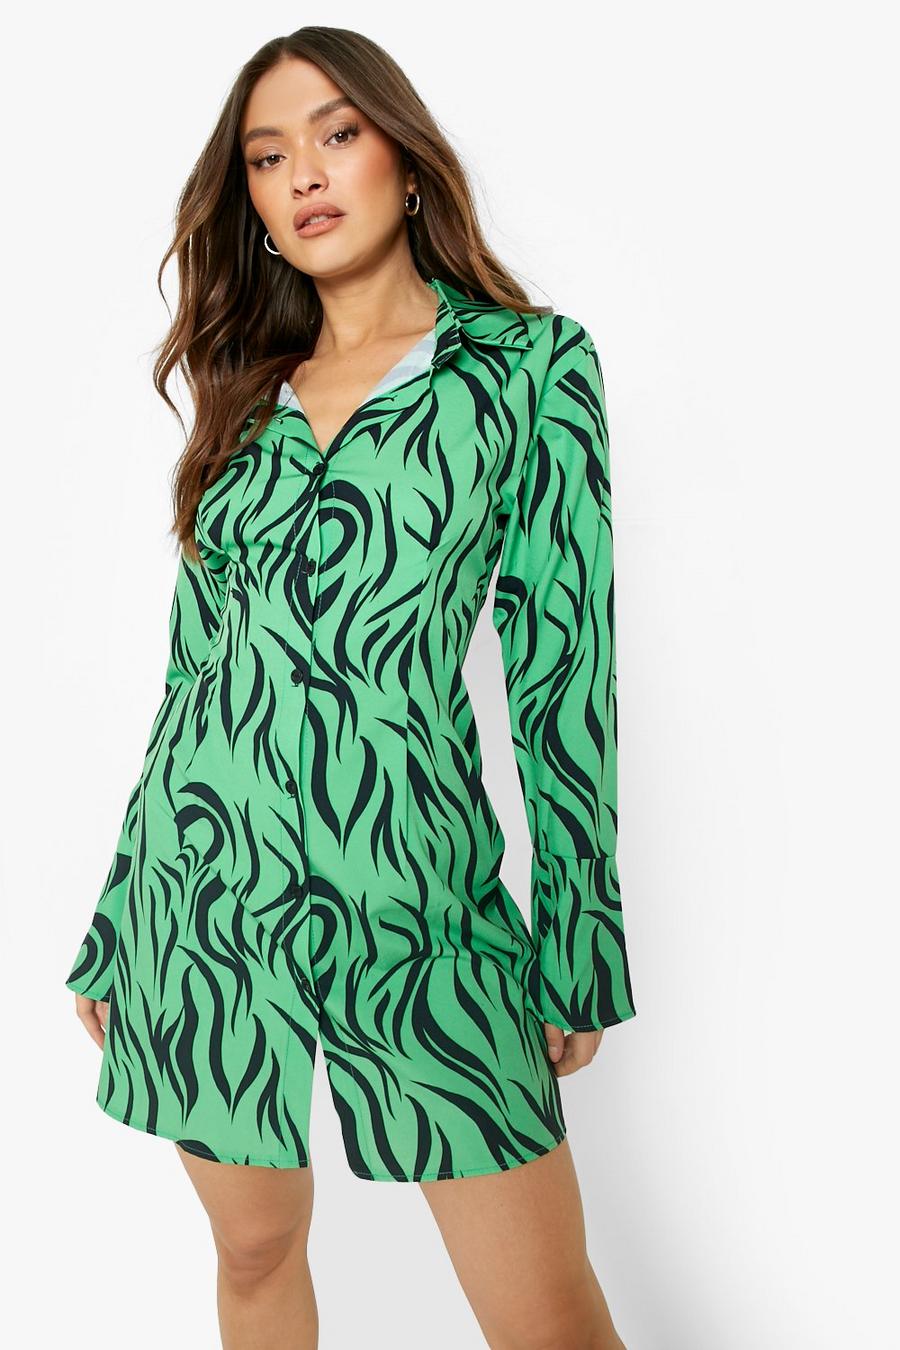 ירוק בוהק green שמלת חולצה עם הדפס זברה ושרוולים מתרחבים